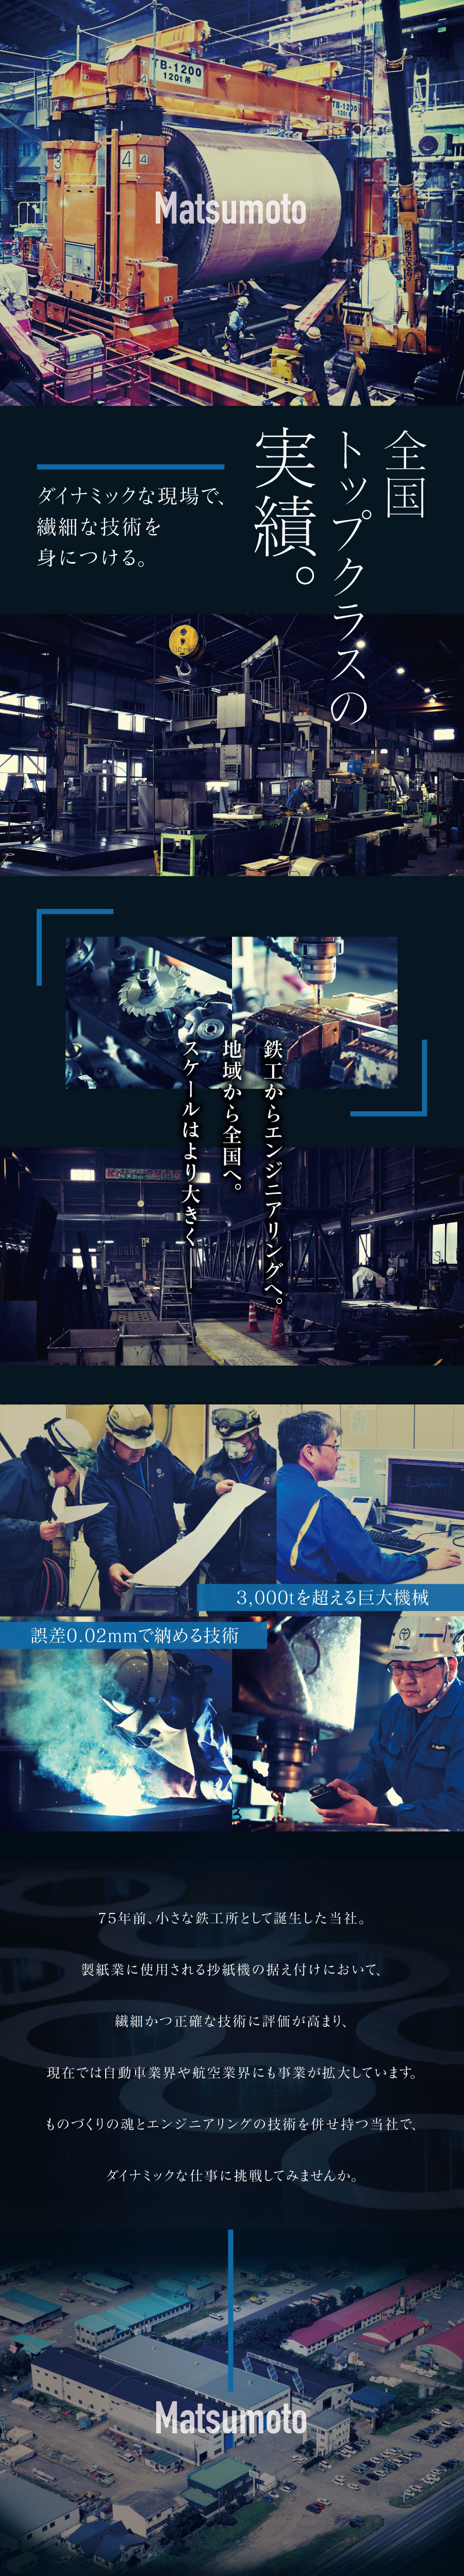 株式会社松本鐵工所からのメッセージ